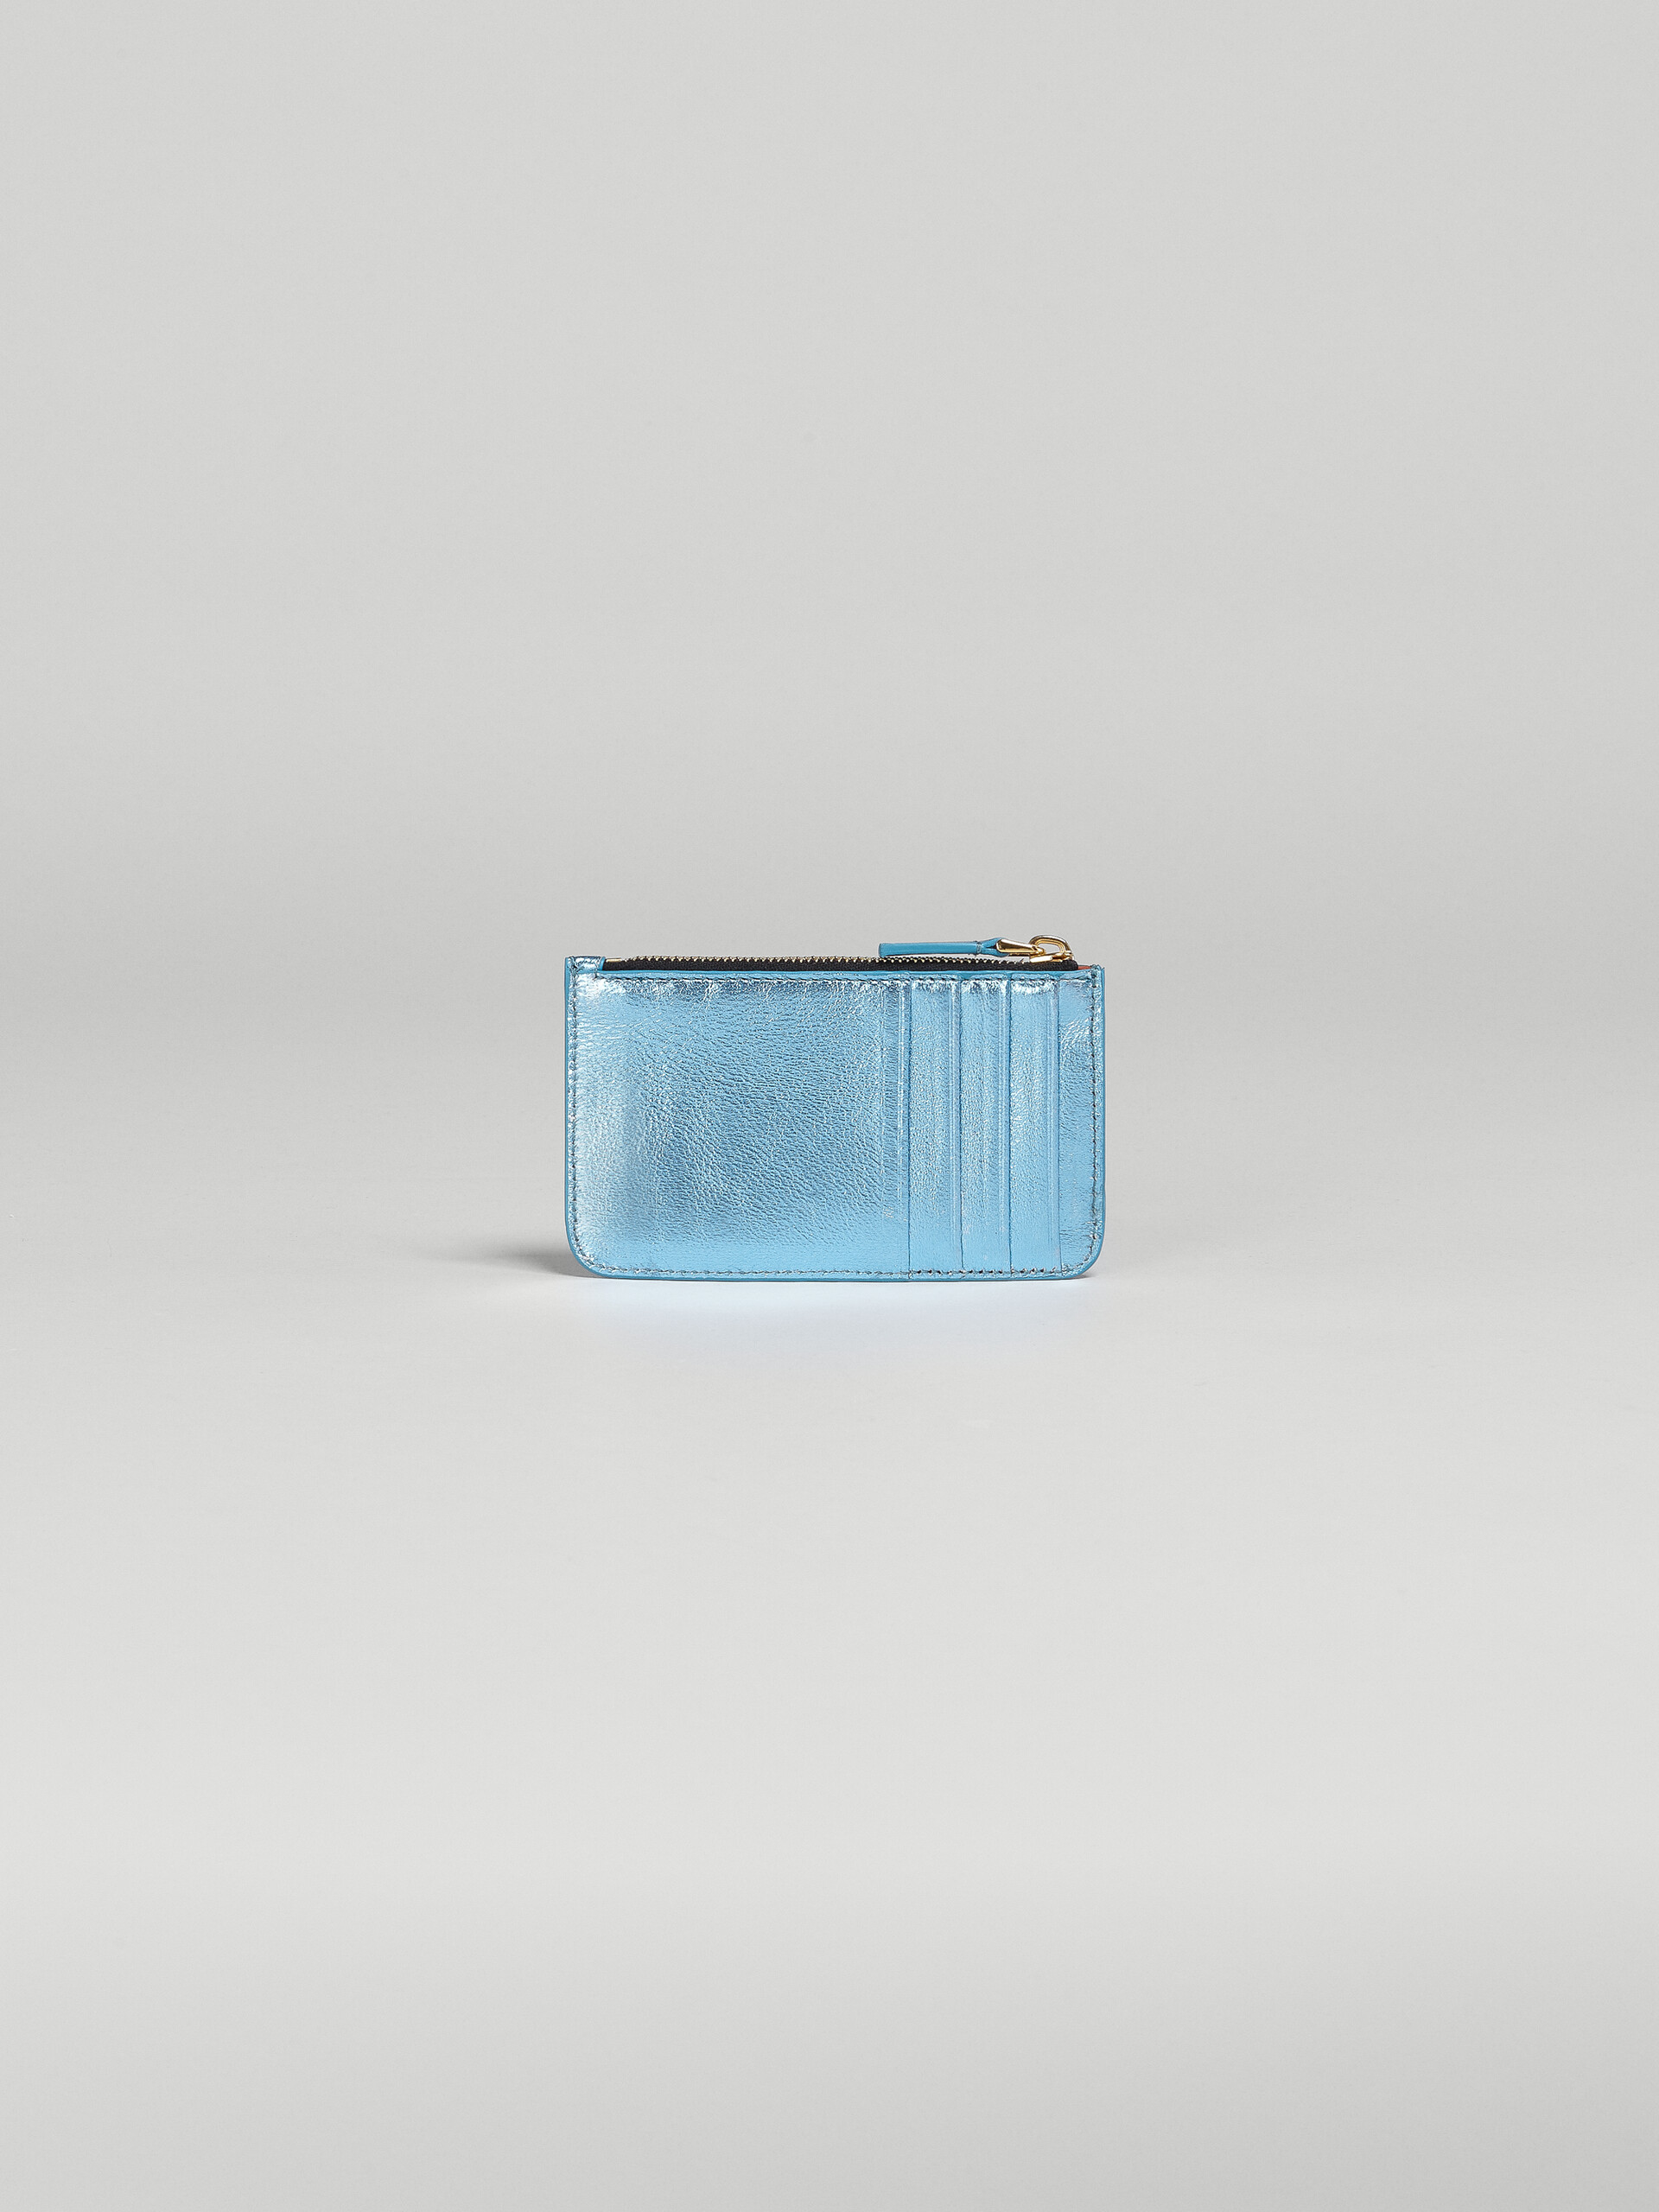 Porte-cartes en cuir nappa bleu pâle métallisé - Portefeuilles - Image 3